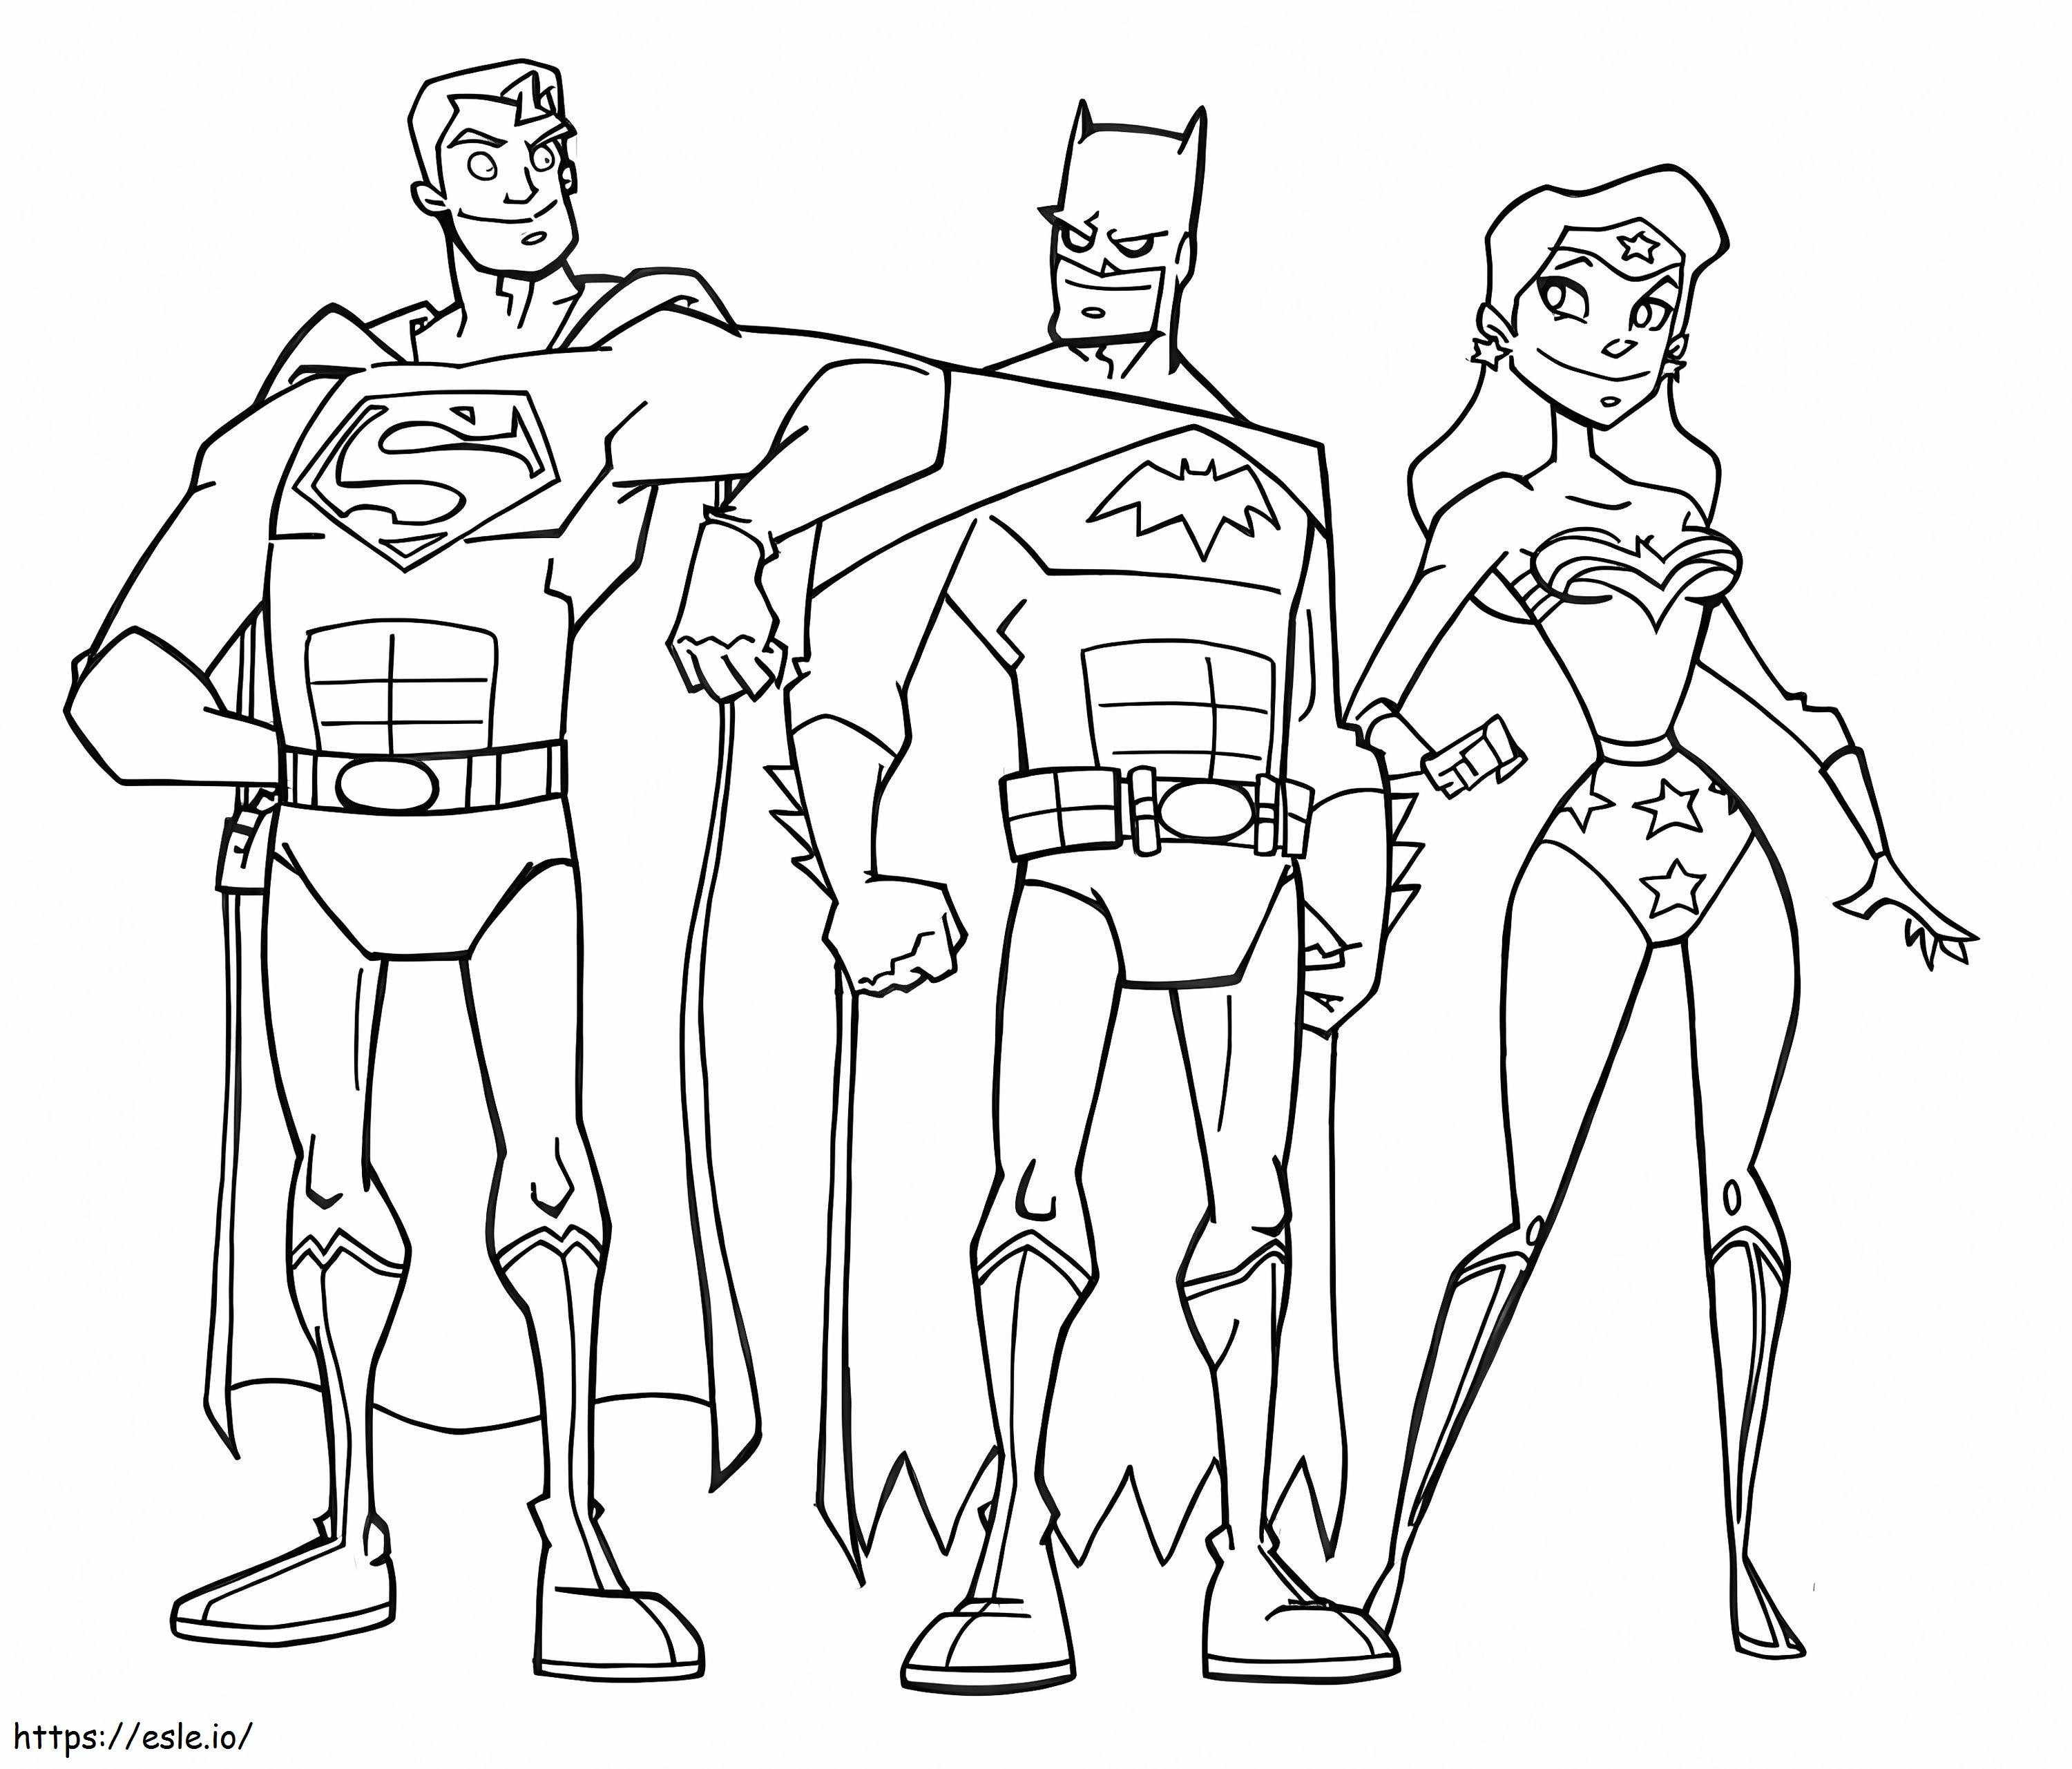  Immagini della Justice League da colorare